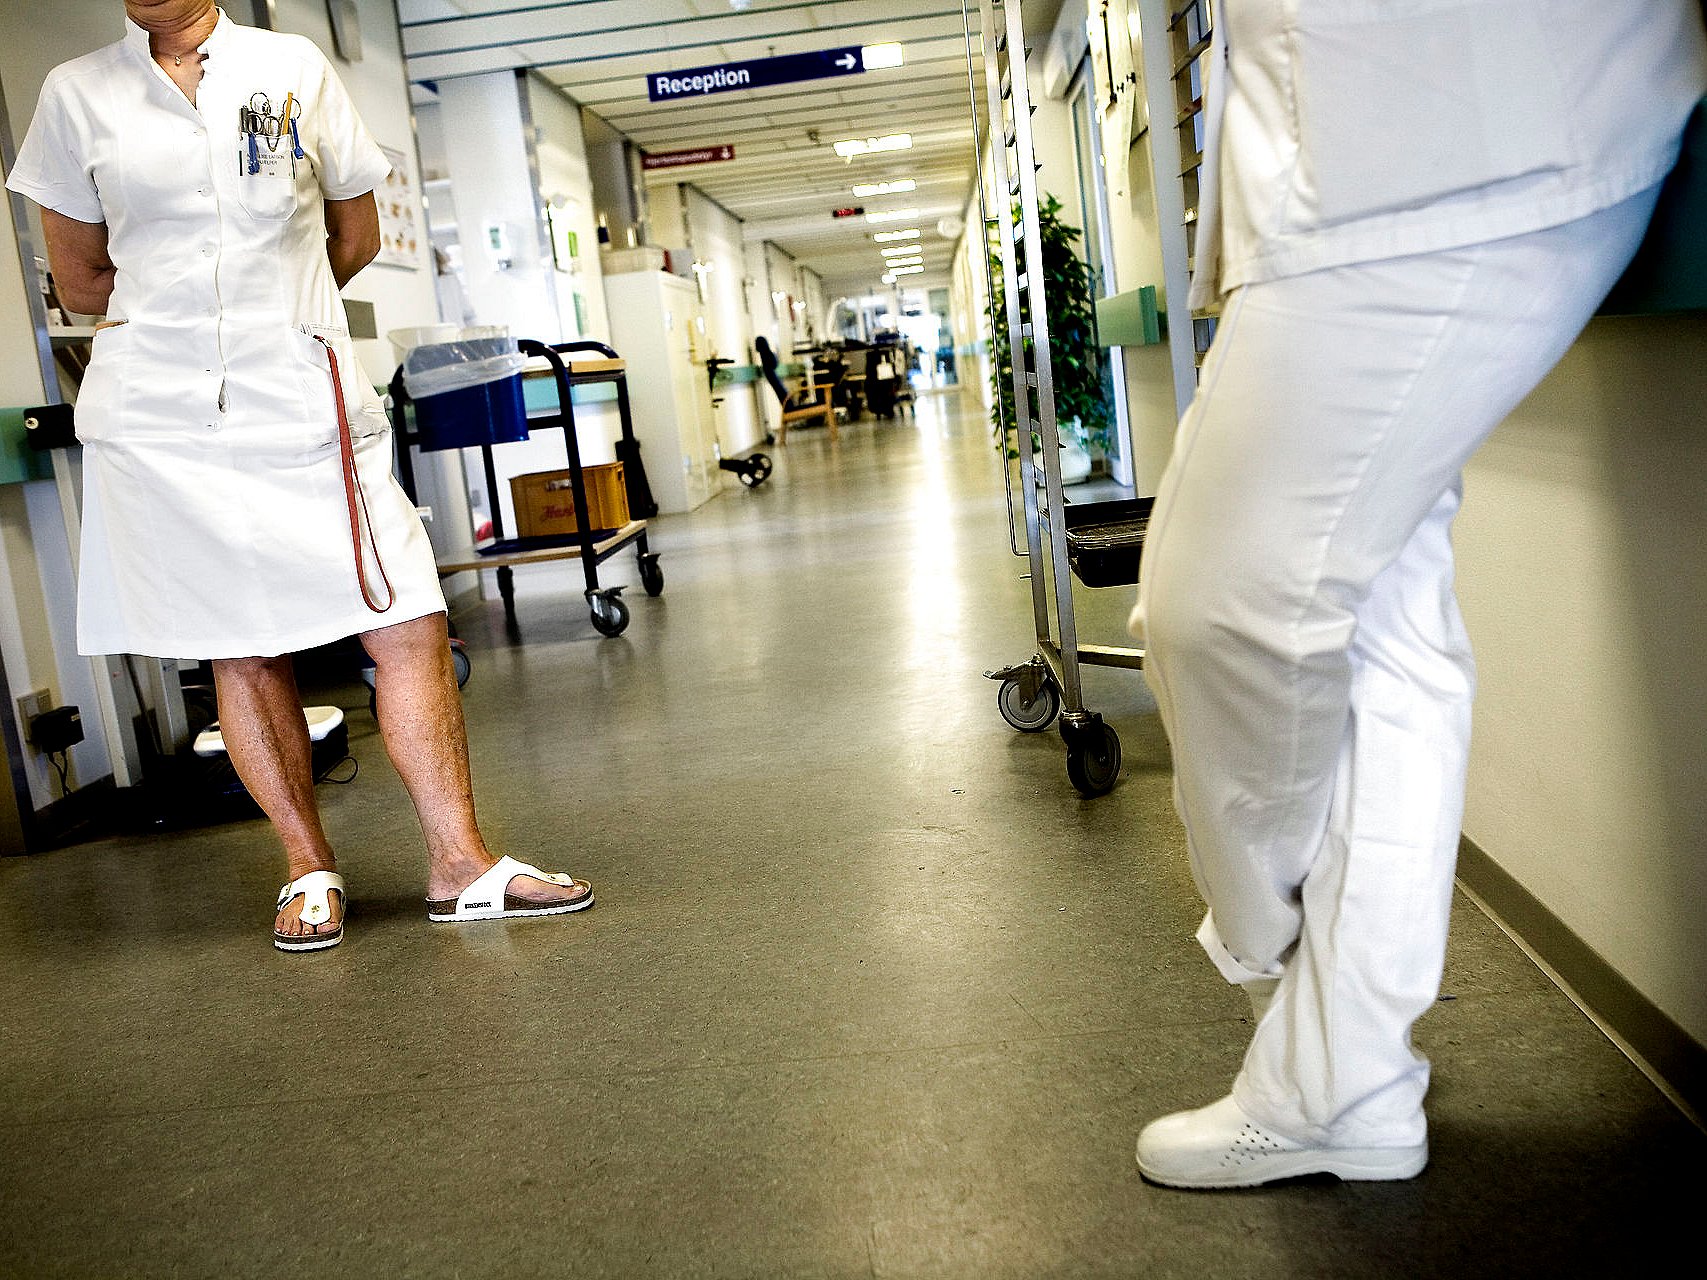 Ansatte på hospital har "uhygiejnisk" tøjvane – får de klar besked | TV 2 Kosmopol